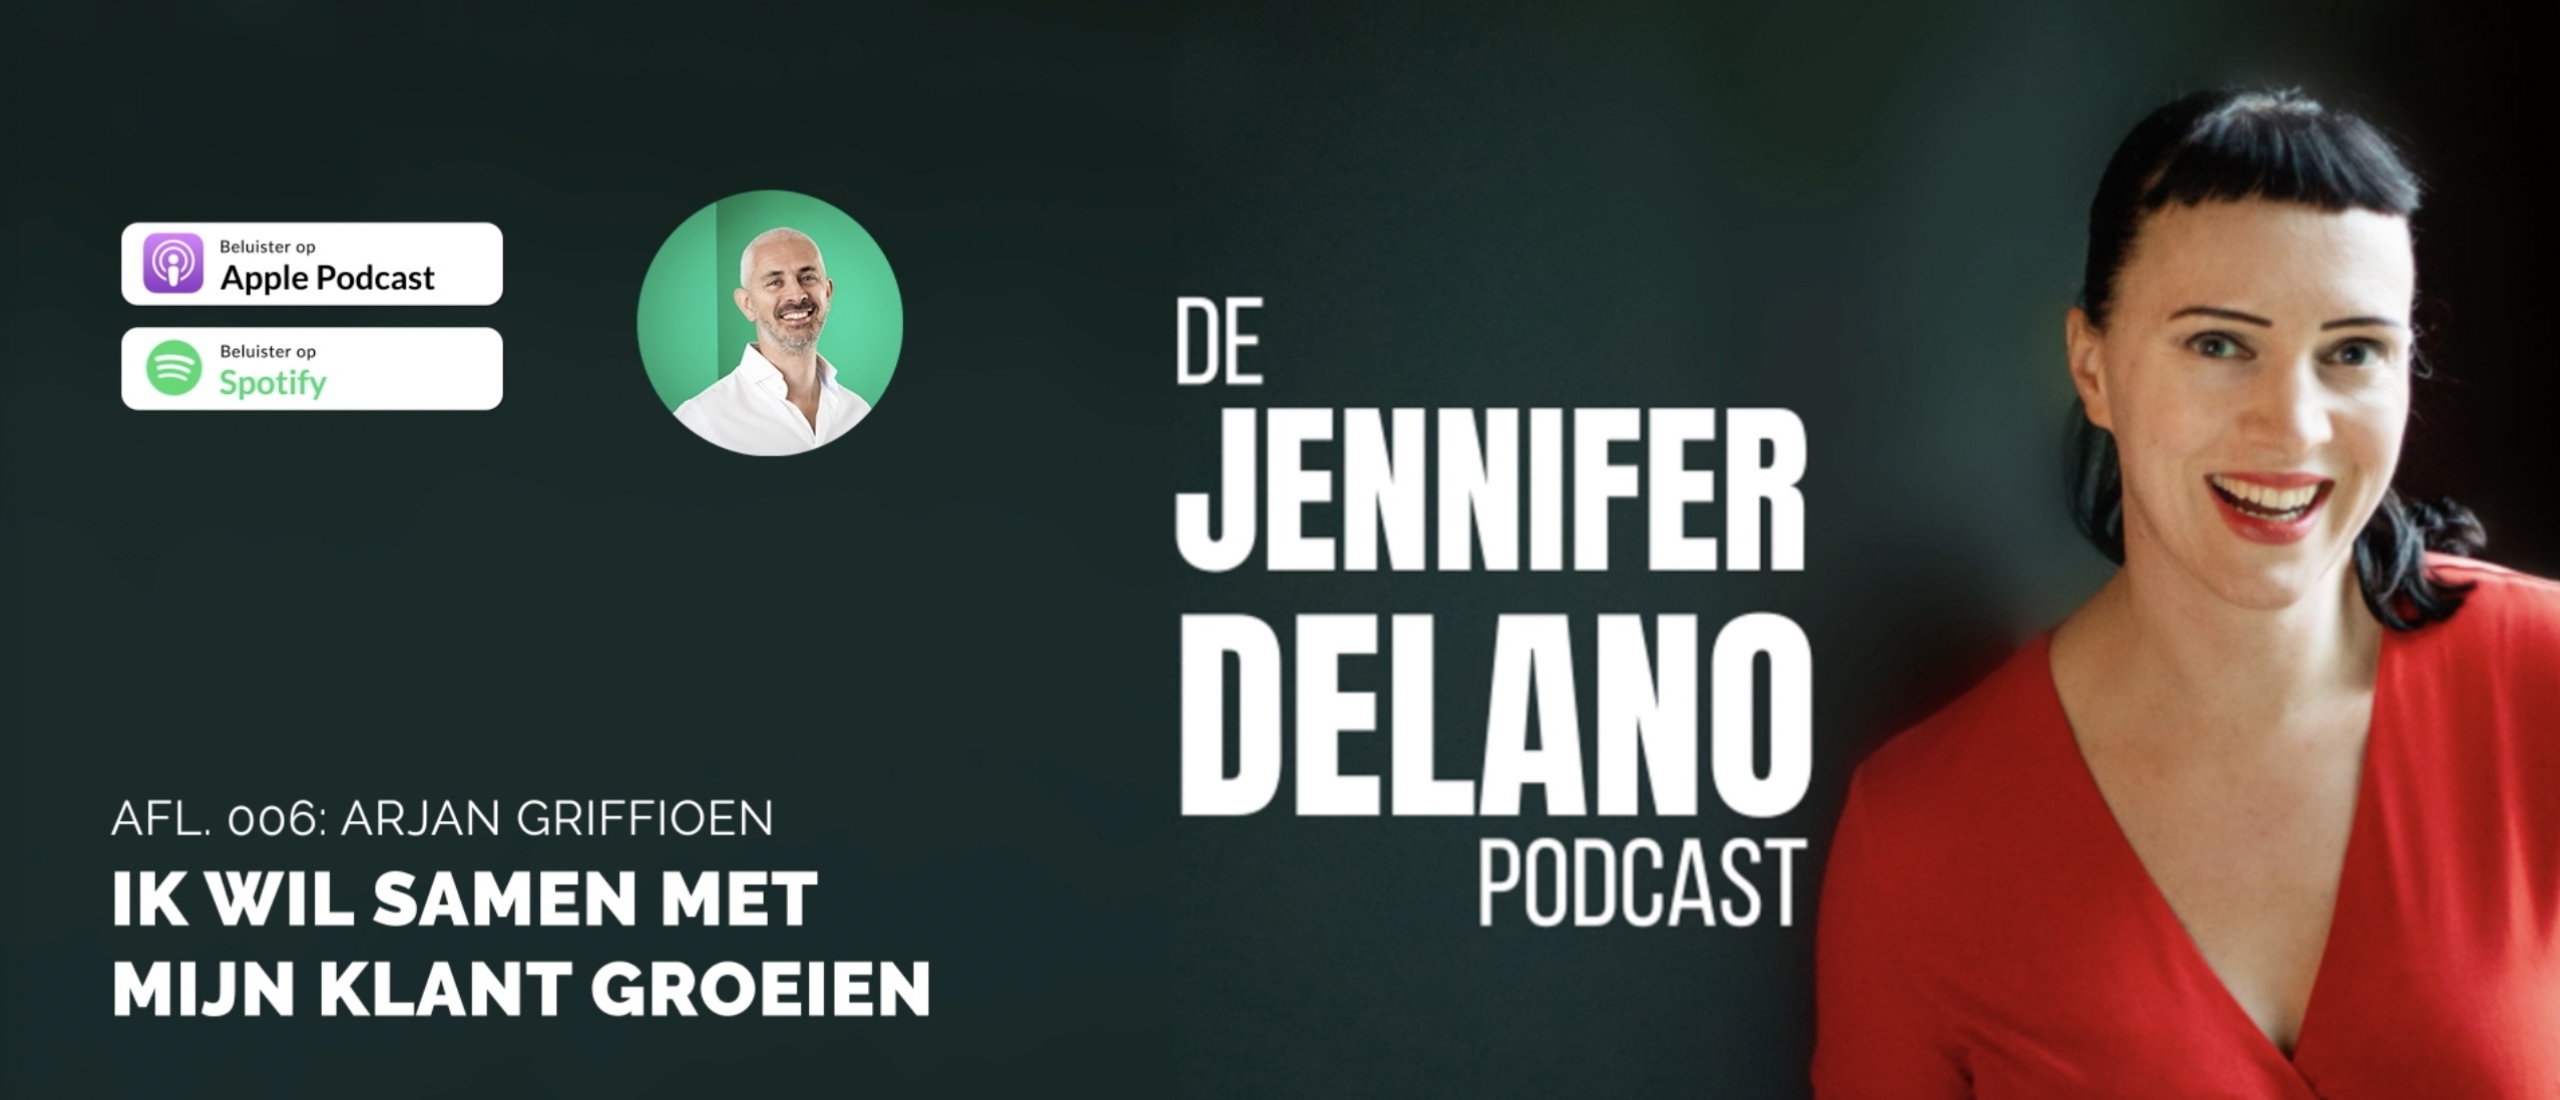 'Ik wil samen met mijn klant groeien' - De Jennifer Delano Podcast Afl. 006 met Arjan Griffioen